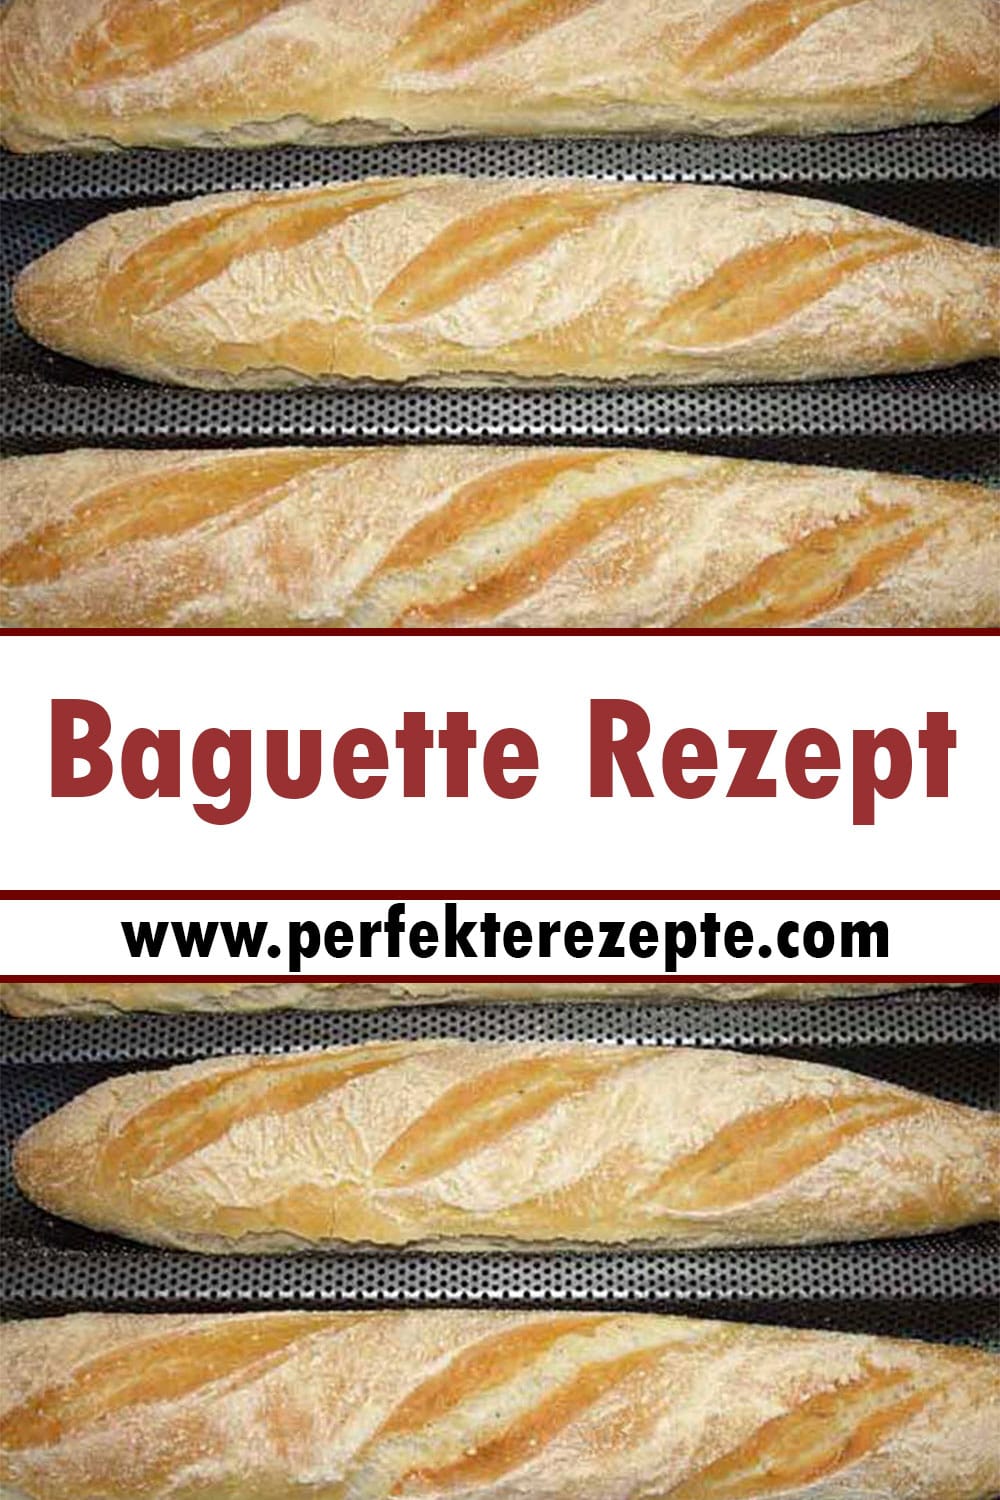 Baguette Rezept